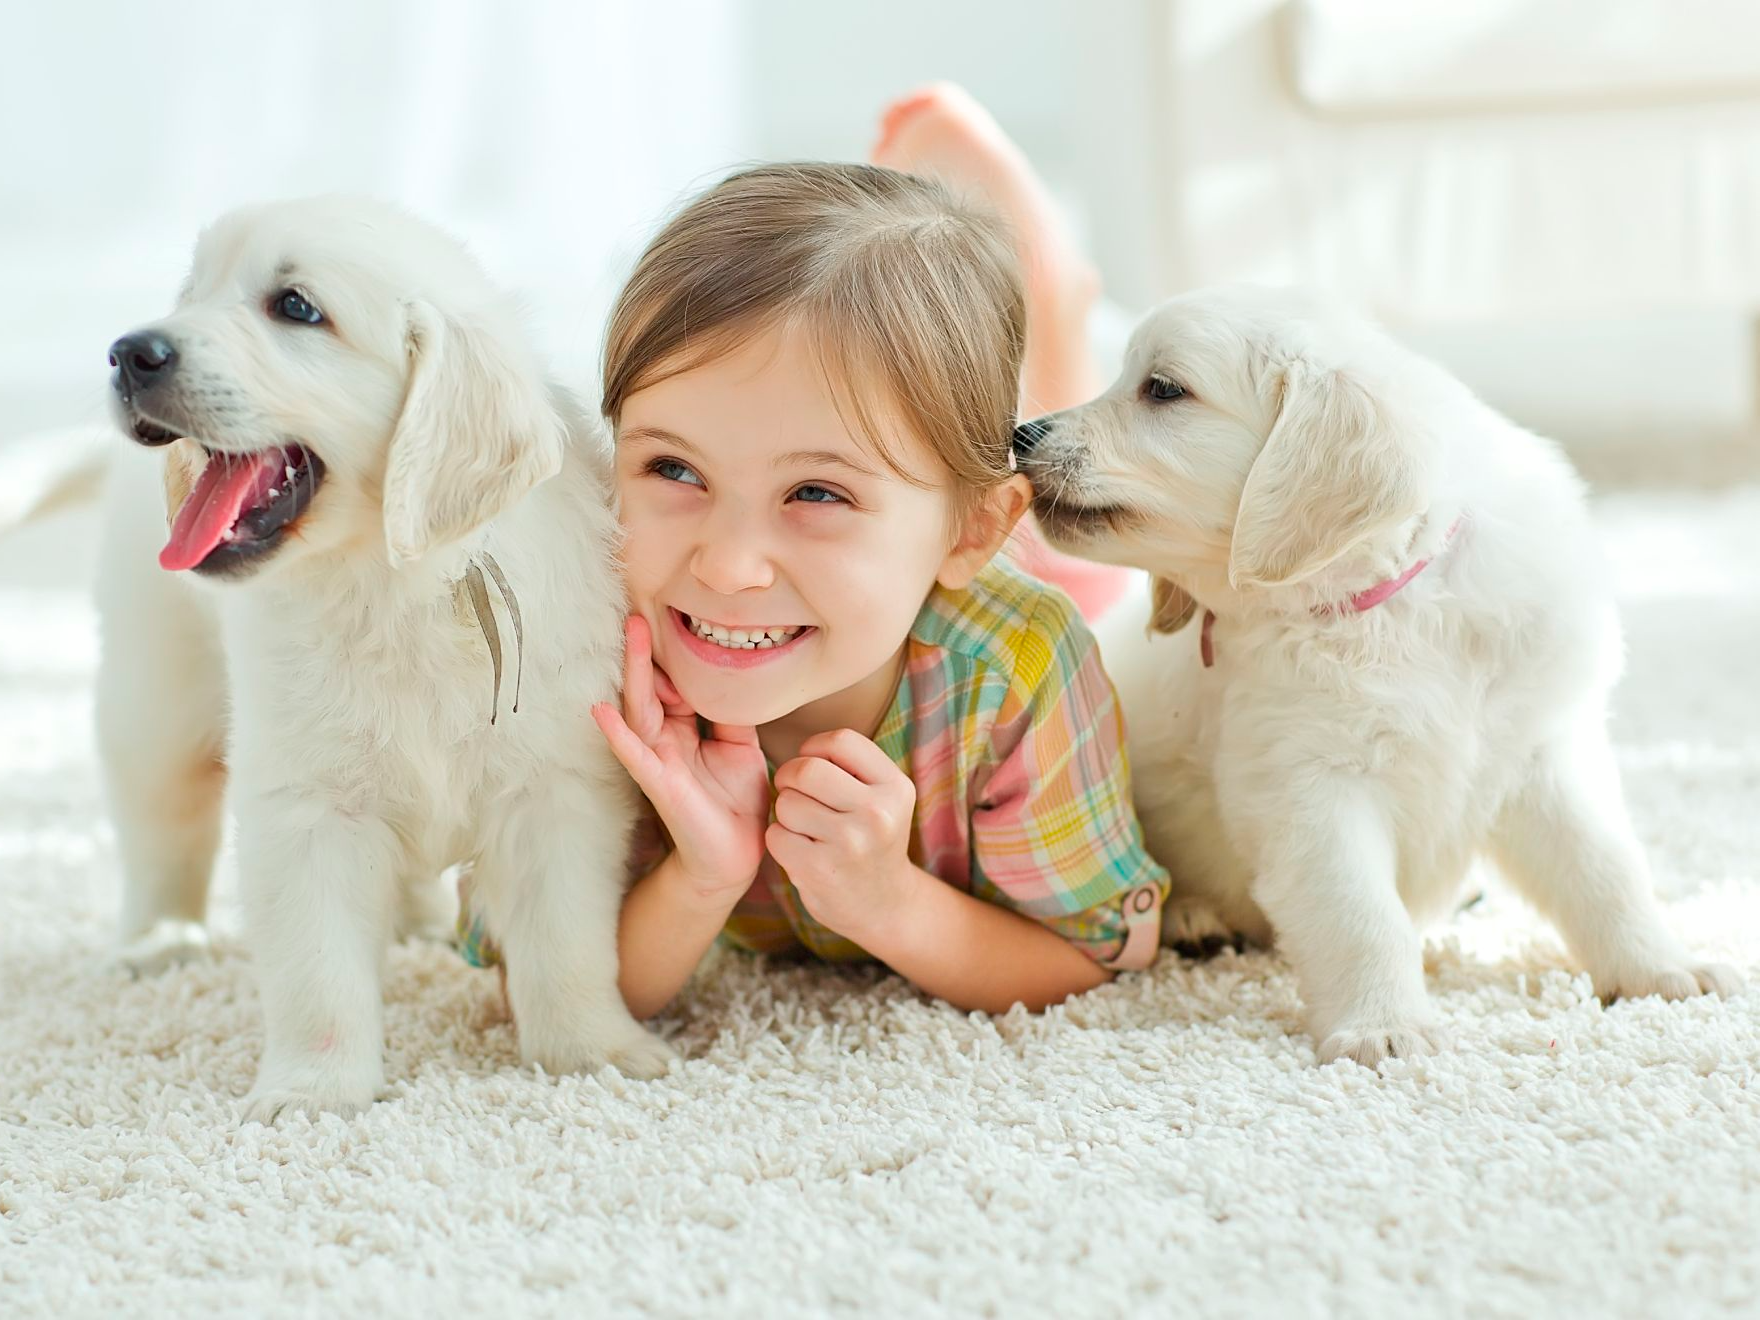 Kind lacht terwijl ze op een tapijt ligt met twee witte puppies